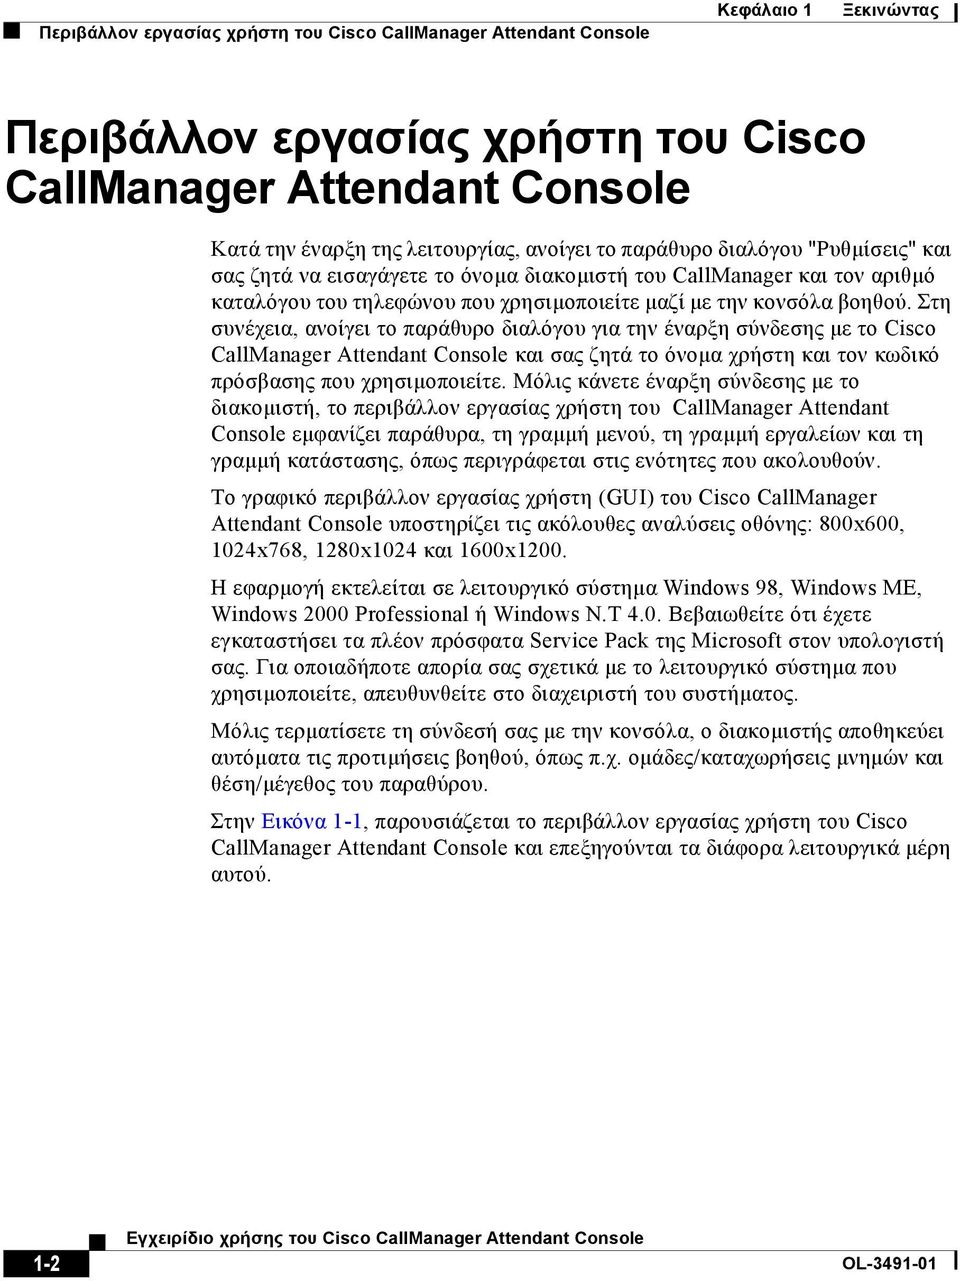 Στη συνέχεια, ανοίγει το παράθυρο διαλόγου για την έναρξη σύνδεσης µε το Cisco CallManager Attendant Console και σας ζητά το όνοµα χρήστη και τον κωδικό πρόσβασης που χρησιµοποιείτε.